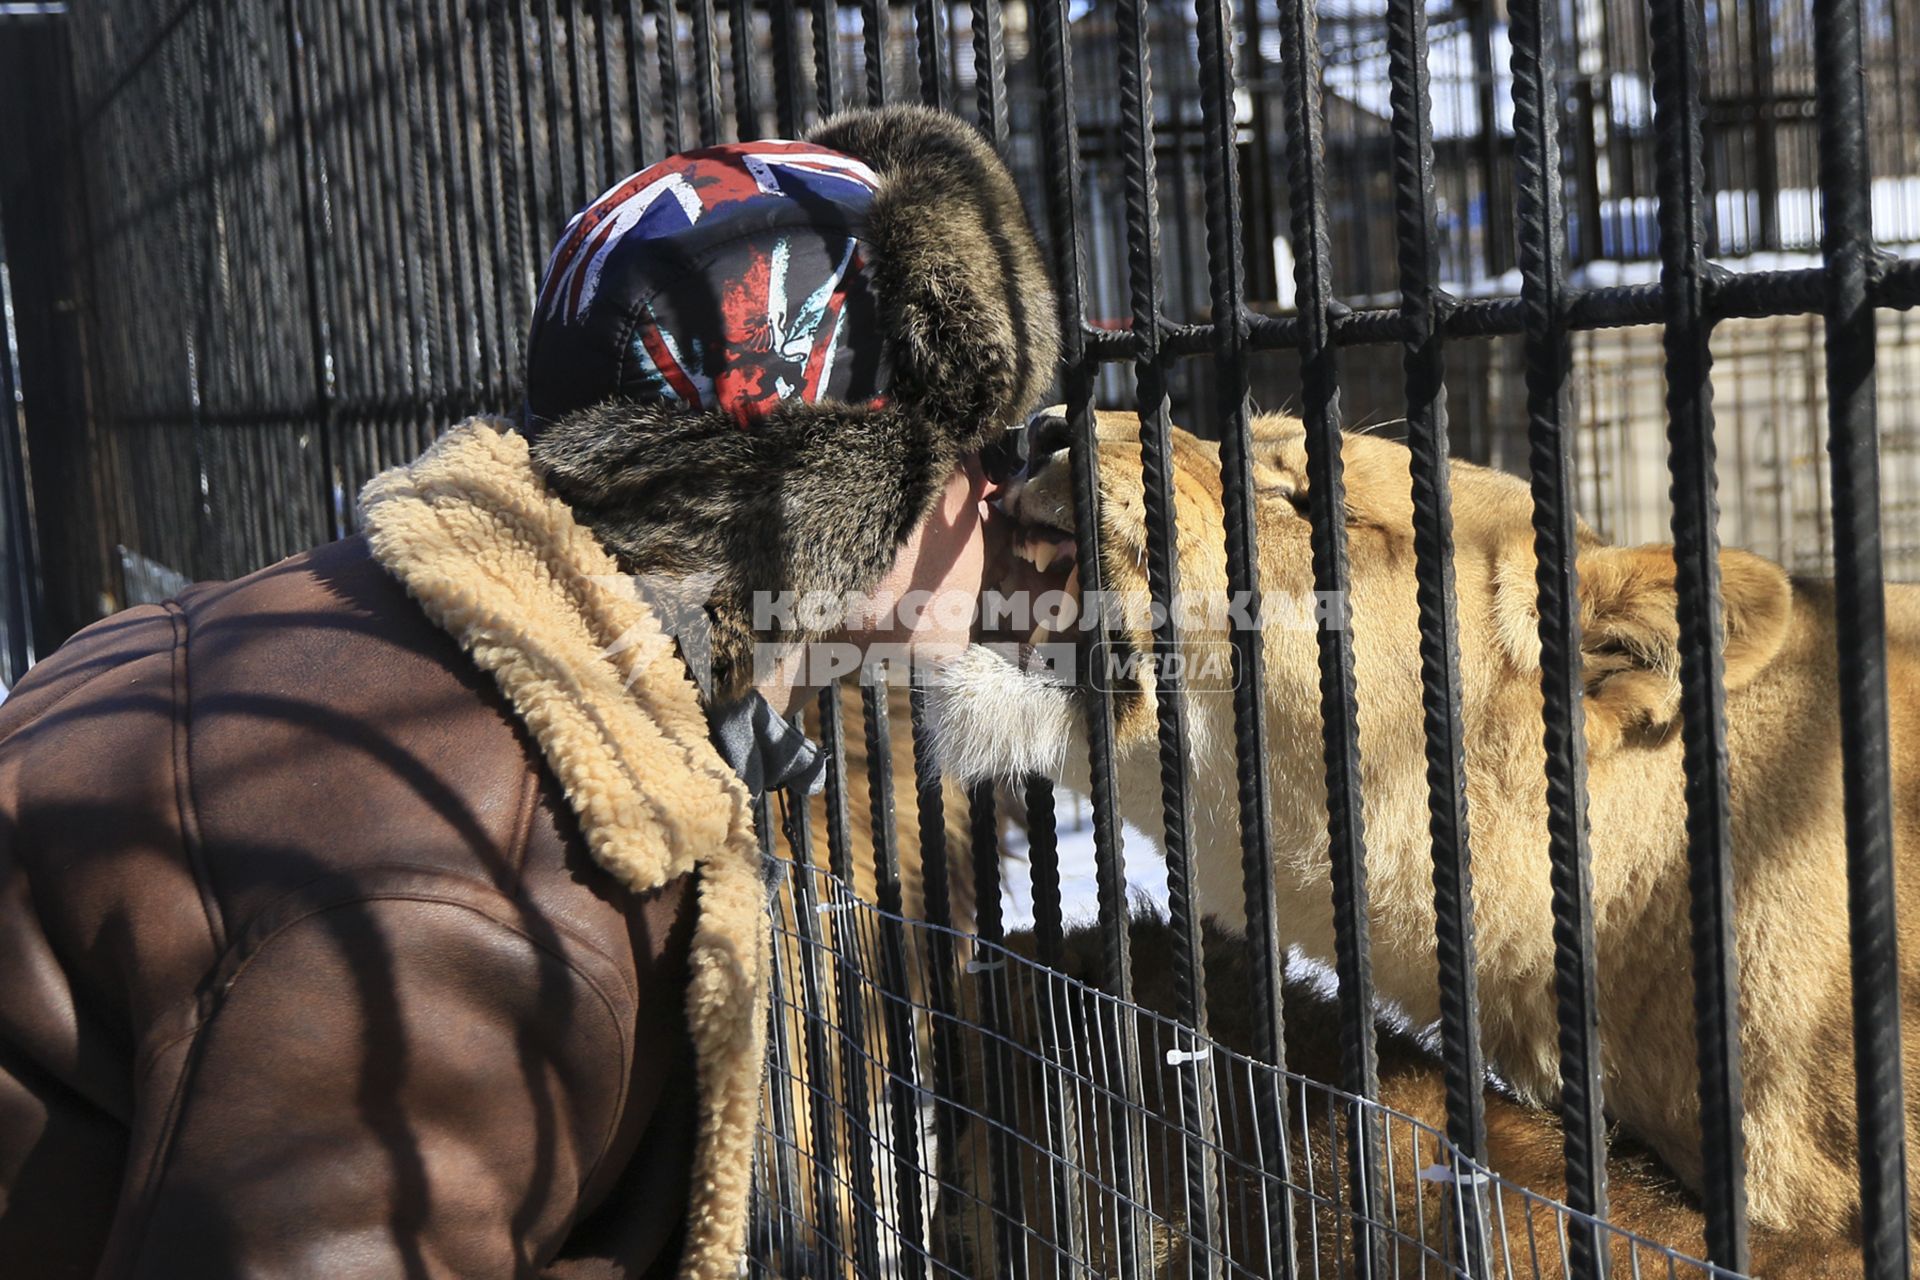 Барнаул. Мужчина кормит львицу в зоопарке.